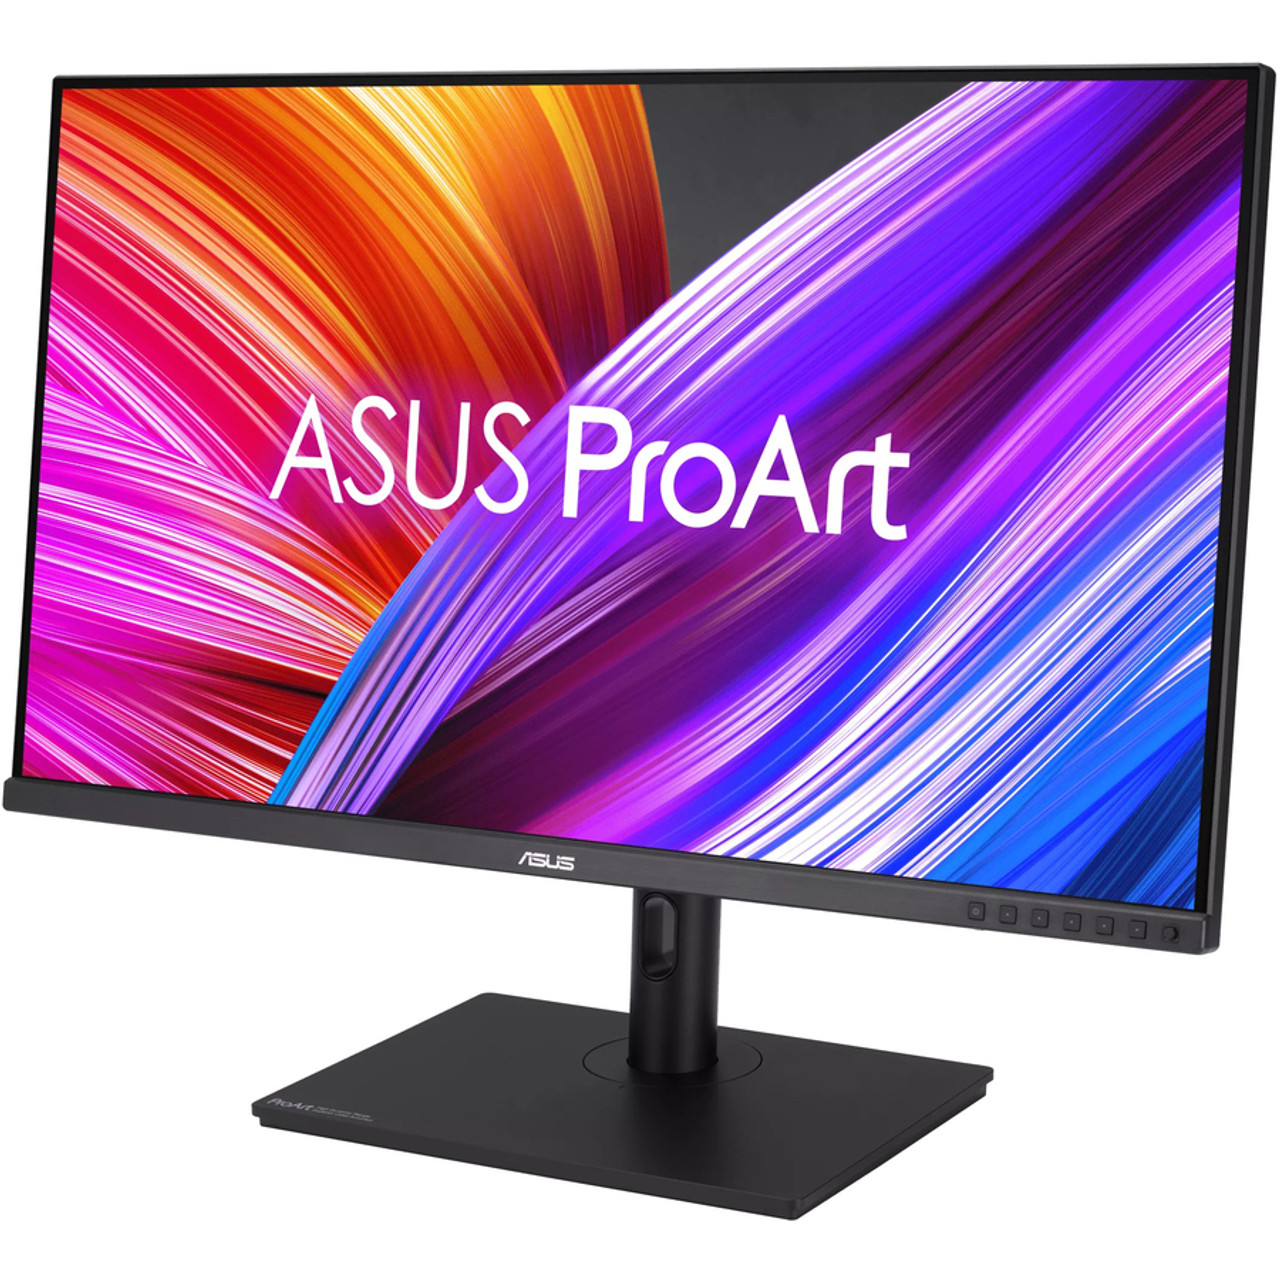  ASUS ProArt Display 27 Monitor - WQHD (2560 x 1440